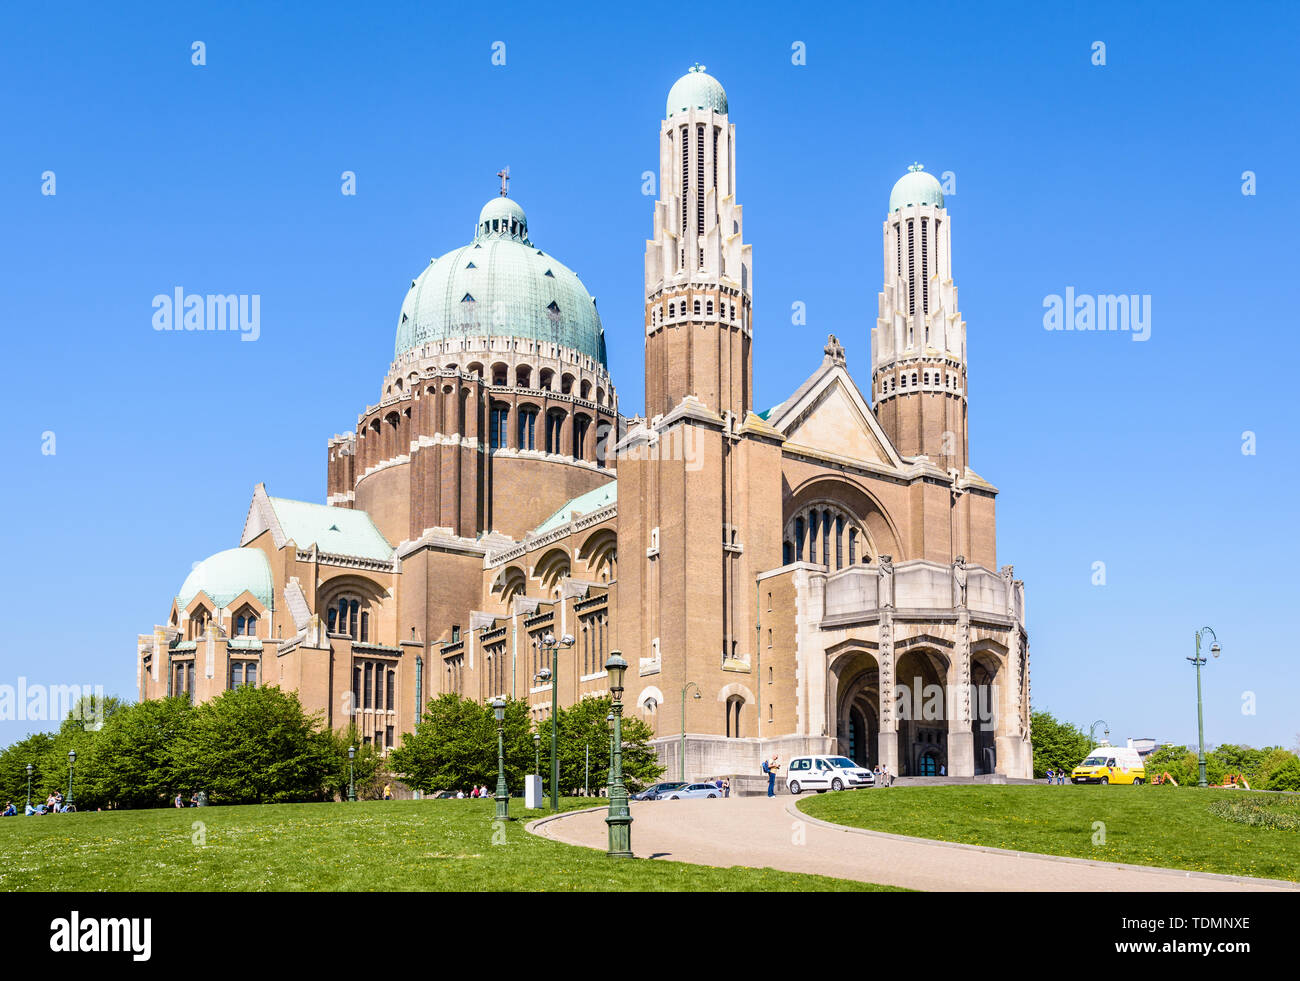 Tre quarti di vista frontale della Basilica nazionale del Sacro Cuore, situato nell'Elisabeth Park in Koekelberg, Regione di Bruxelles-Capitale, Belgio. Foto Stock